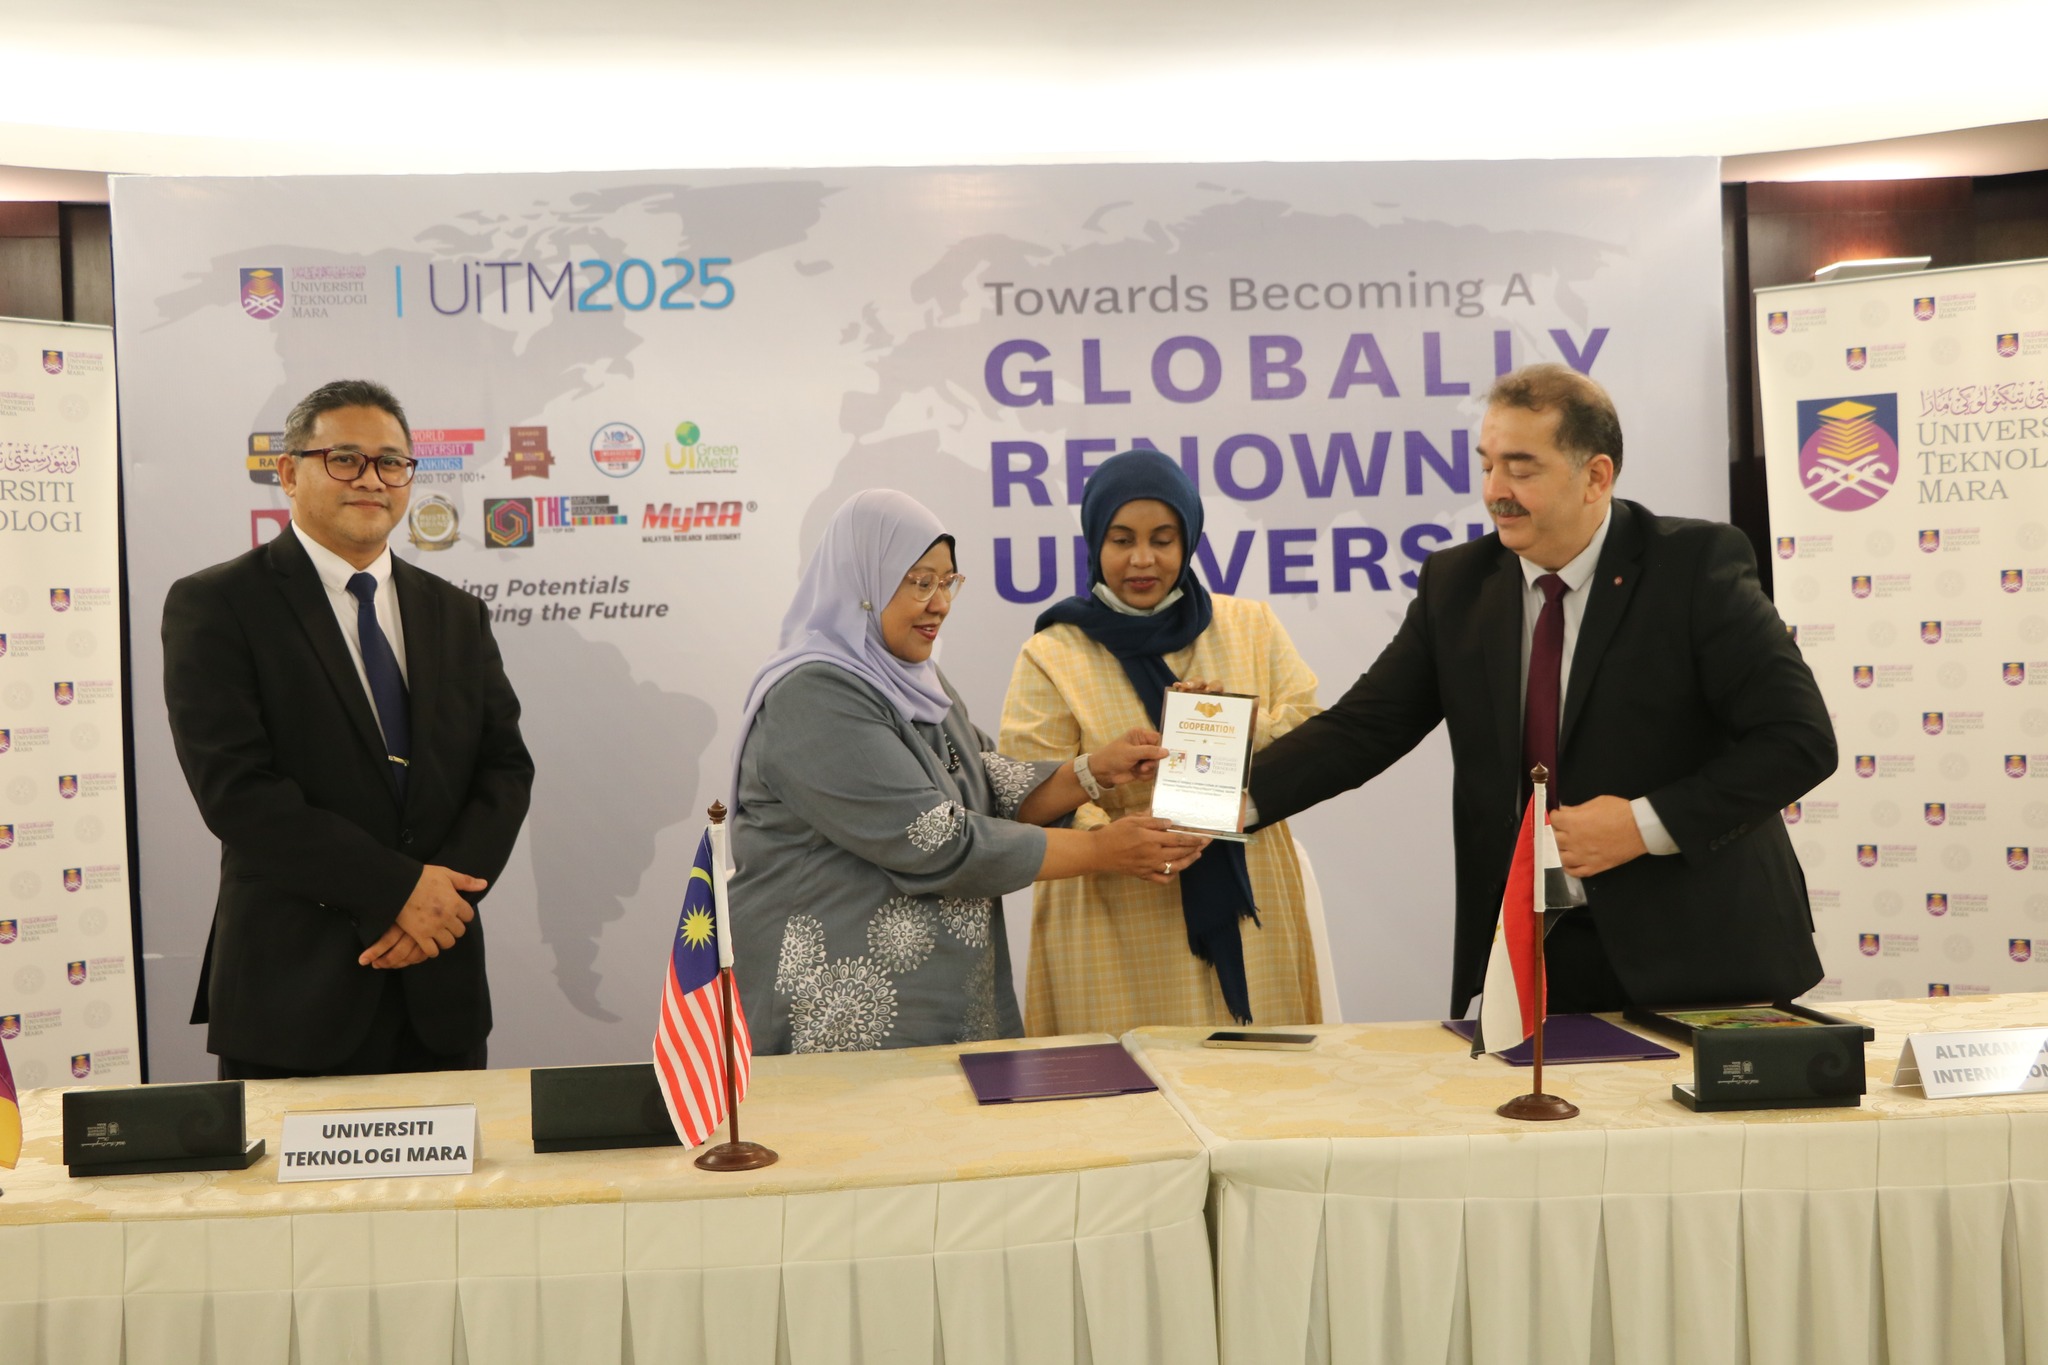 توقيع اتفاقية واعتماد التكاملية الدولية للإدارة والتدريب ماليزيا كمؤسسة تدريب معتمدة لدى جامعة UiTM